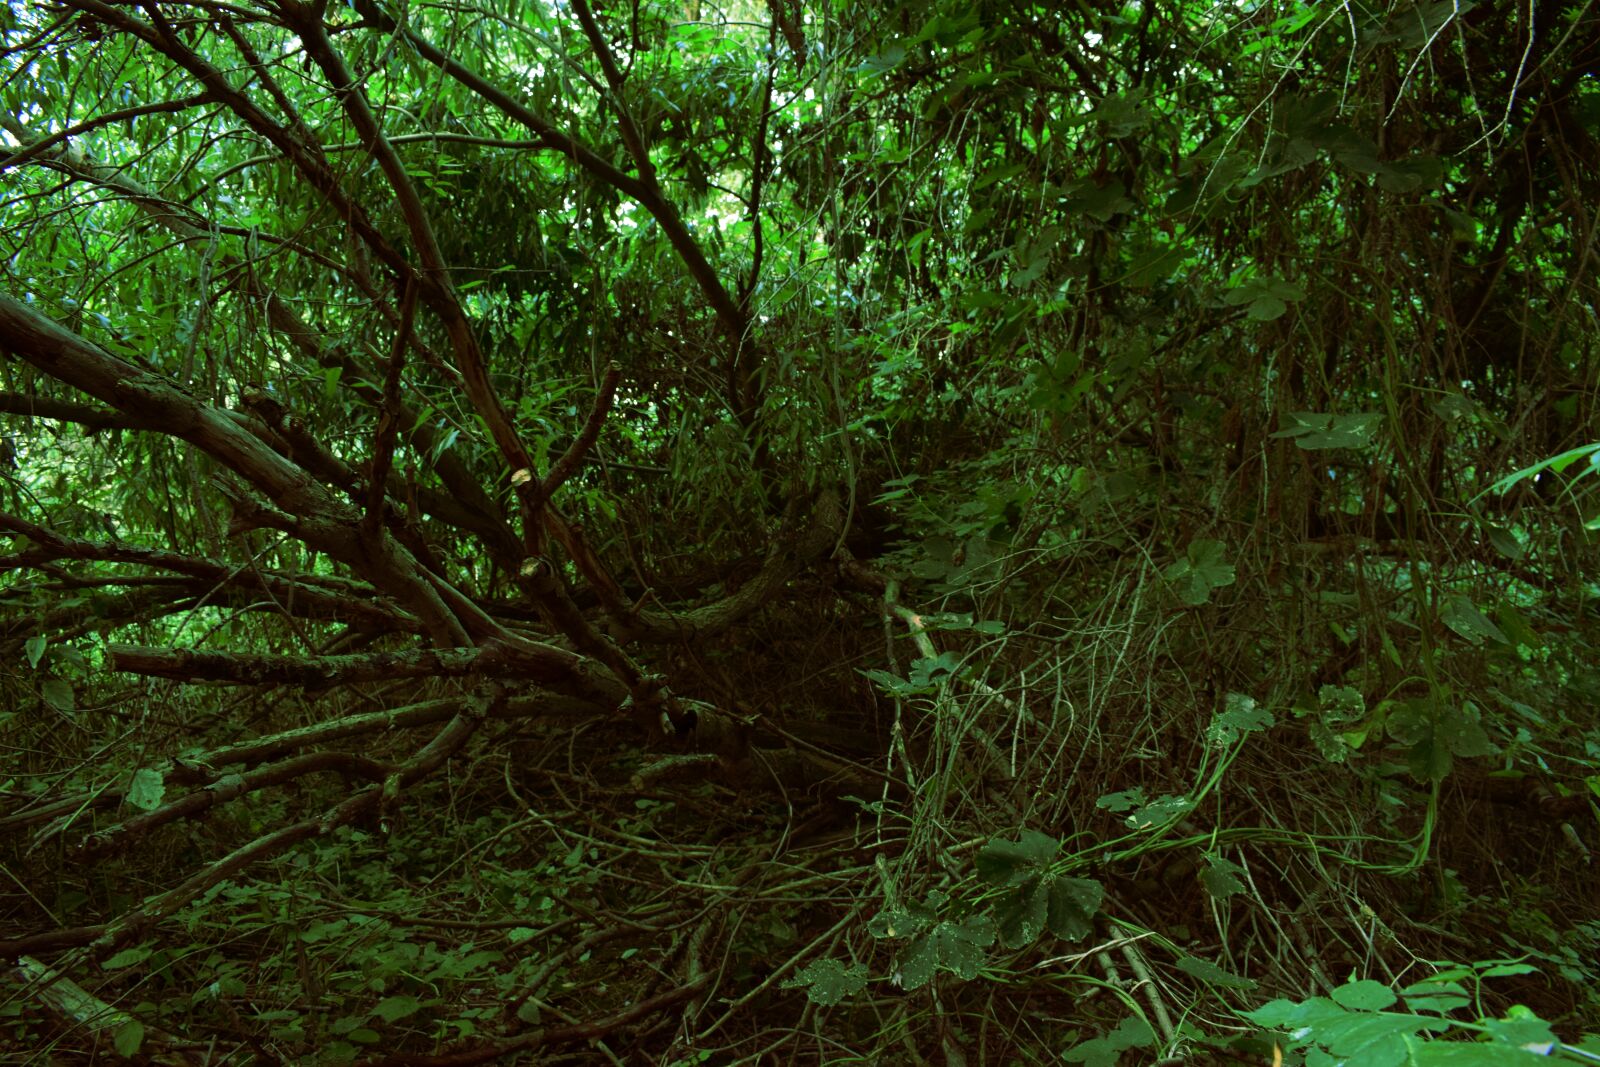 Nikon D3300 + Nikon AF-P DX Nikkor 18-55mm F3.5-5.6G sample photo. Day, forest, green, jungle photography